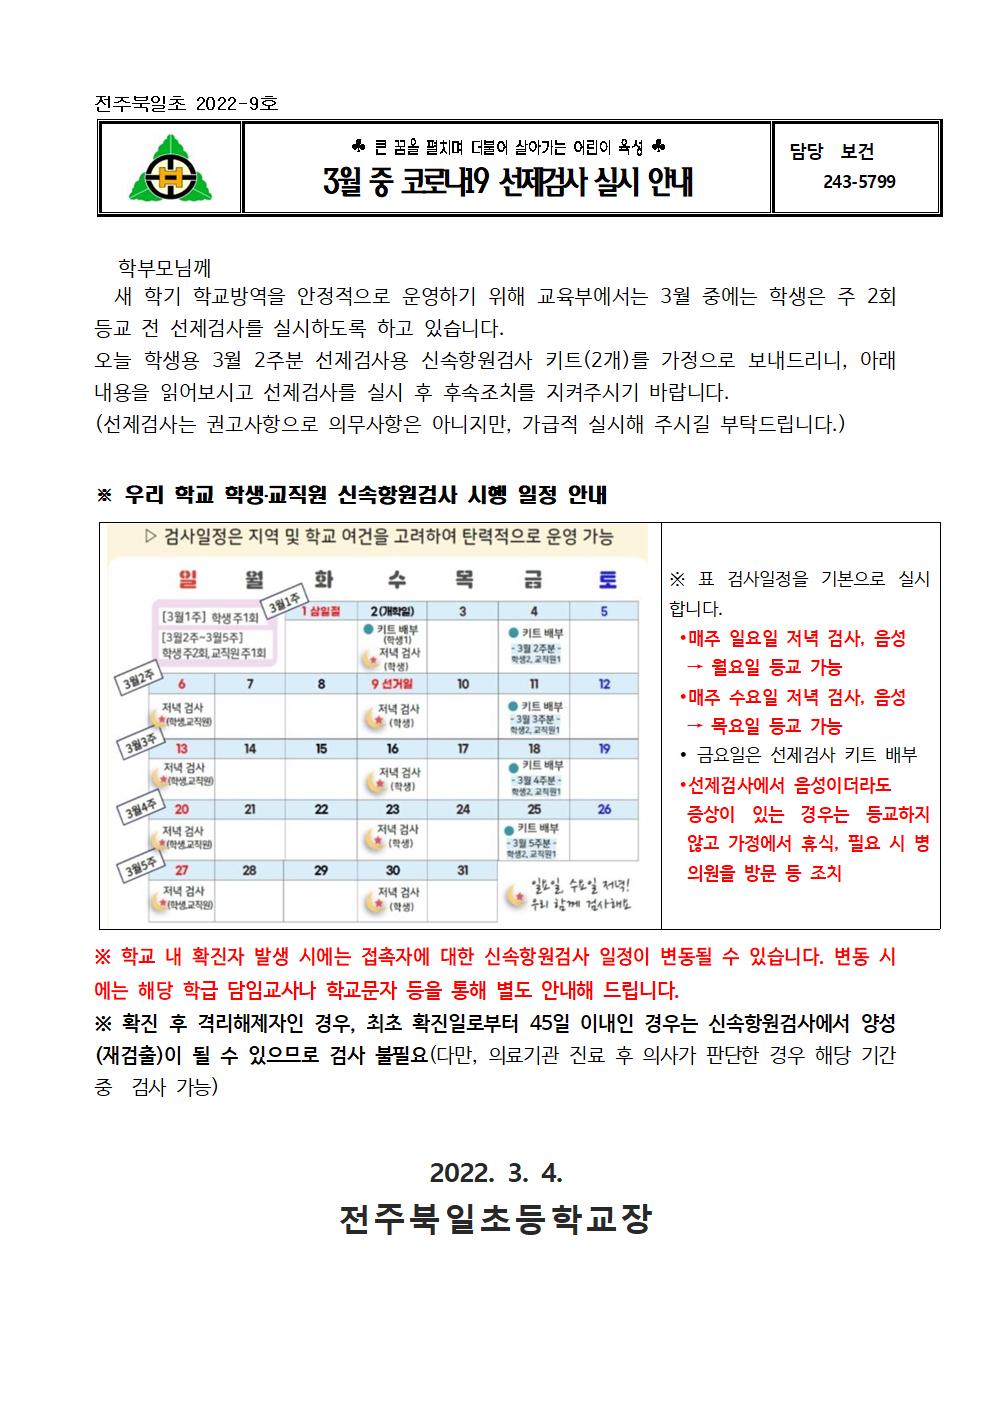 전주북일초 2022-9호 3월 중 코로나19 선제검사 실시 안내001